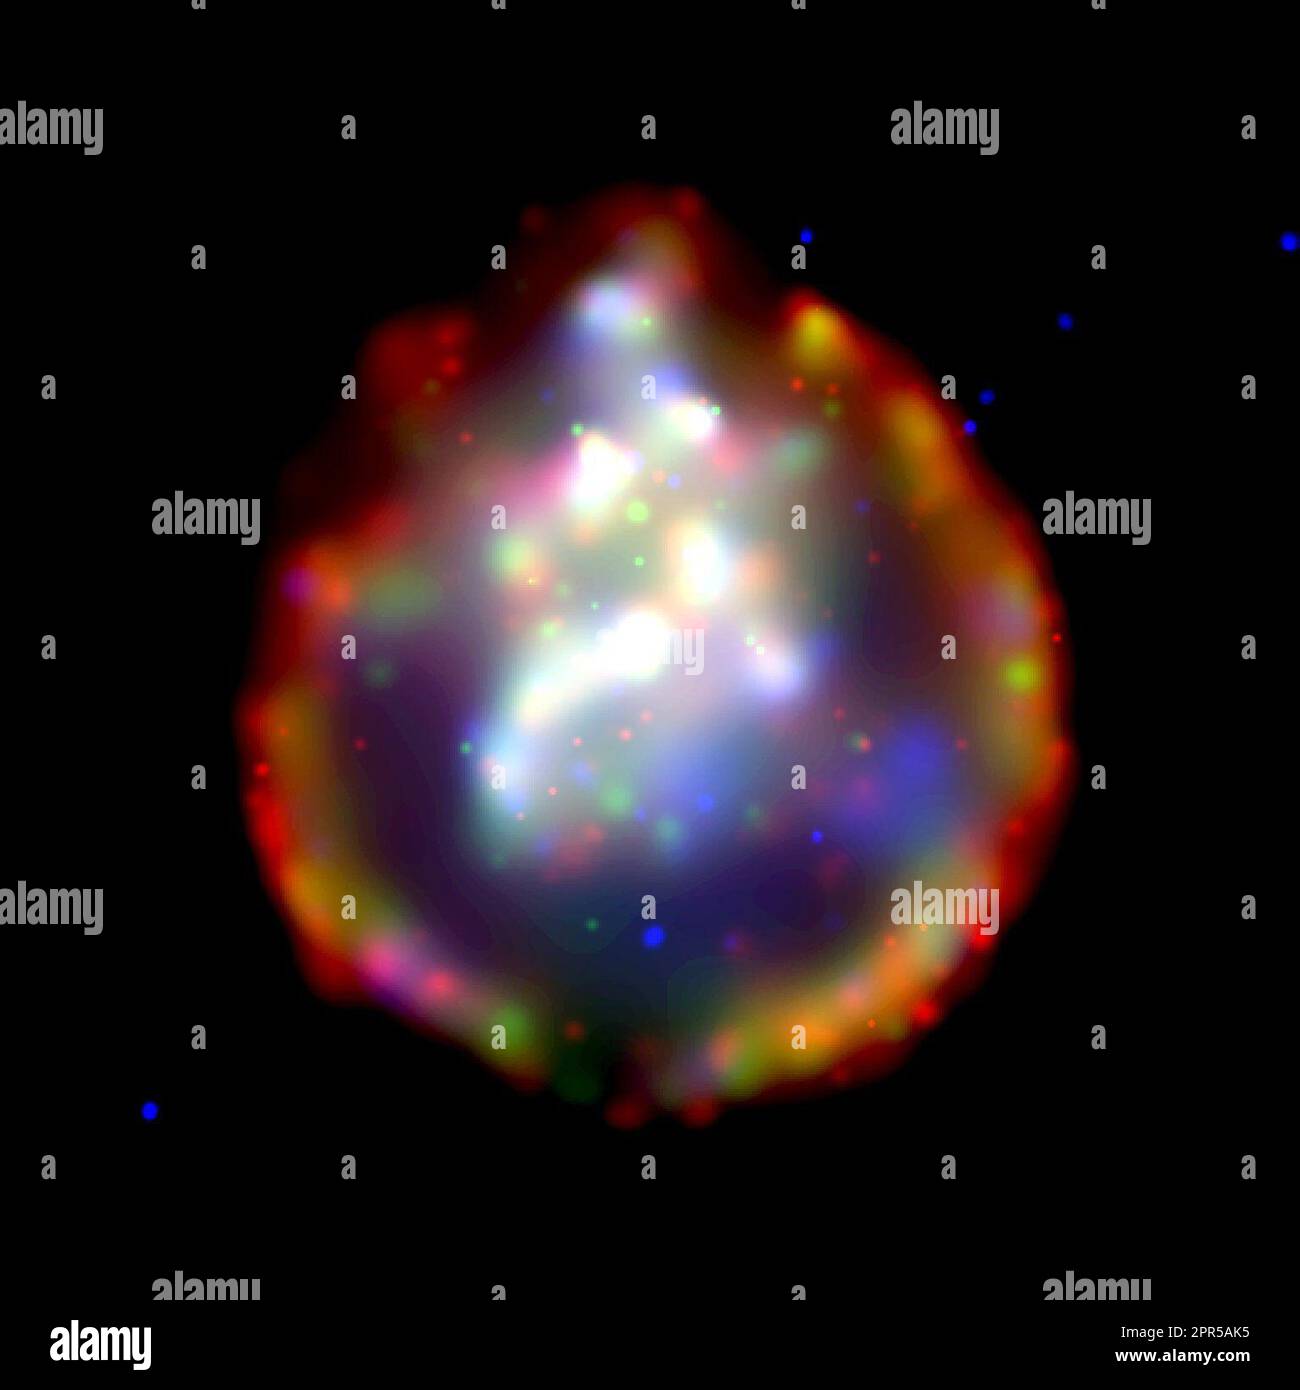 La sua impressionante immagine dell'osservatorio a raggi X di Chandra del residuo di supernova SNR0103-72,6 rivela un anello quasi perfetto di circa 150 anni luce di diametro che circonda una nube di gas arricchita di ossigeno e riscaldata agli urti a milioni di gradi Celsius. L'anello indica i limiti esterni di un'onda d'urto prodotta quando il materiale espulso nell'esplosione della supernova entra in collisione con il gas interstellare. Foto Stock